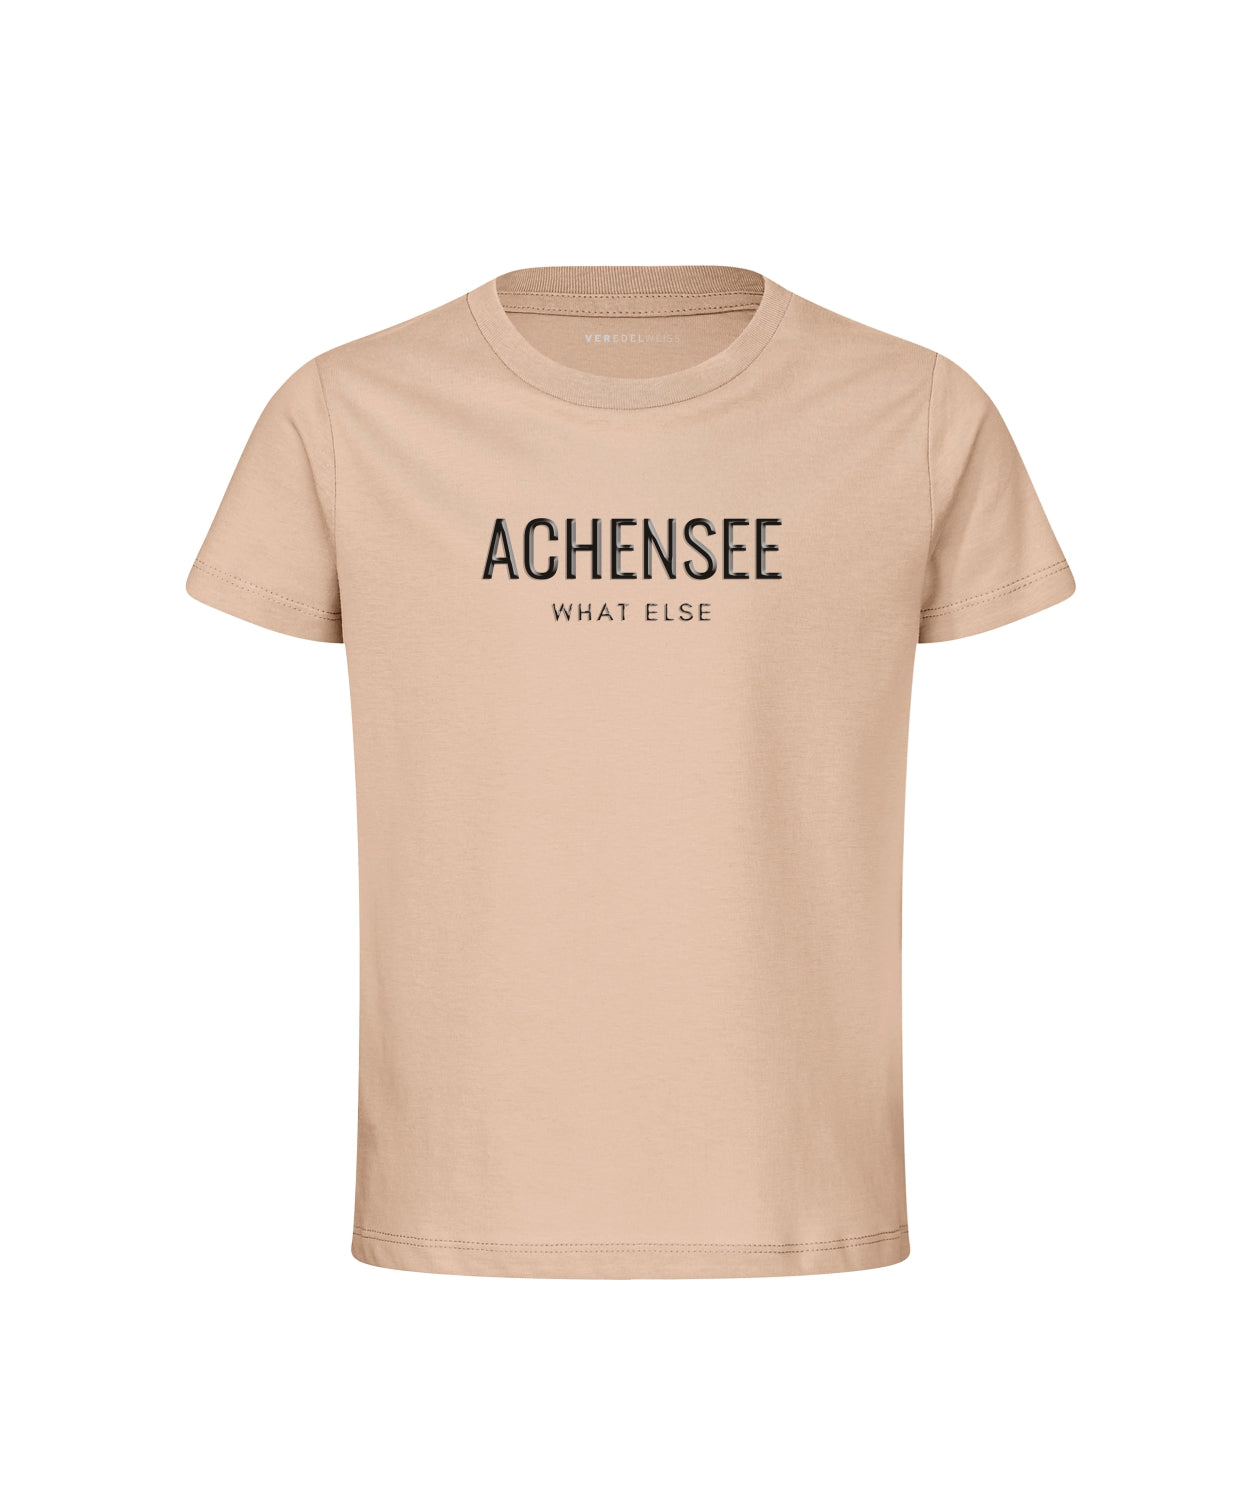 Achensee - What Else (Kinder) Achensee - What Else (Kinder)